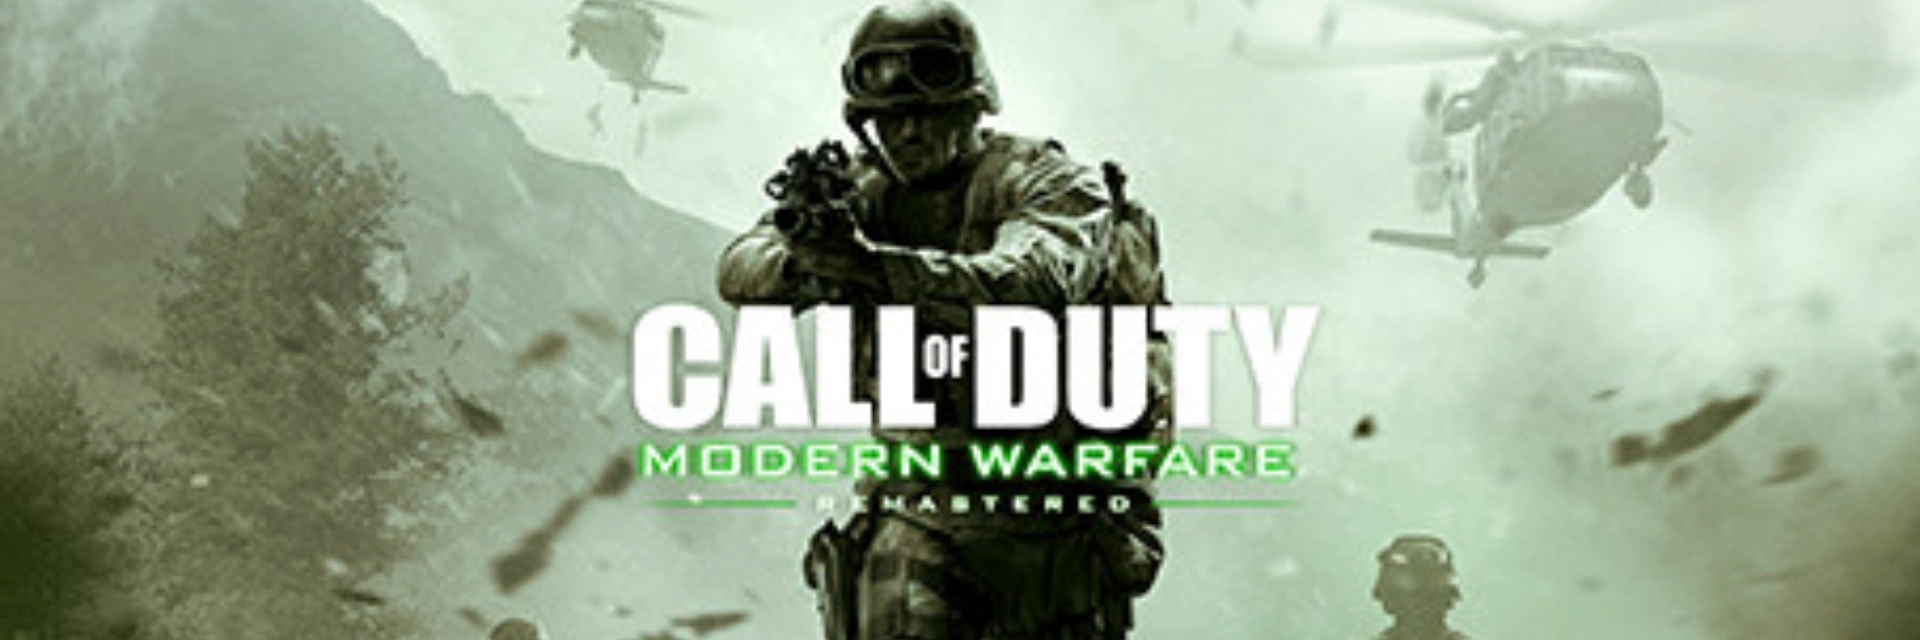 دانلود بازی Call of Duty 4: Modern Warfare برای pc بدون کرک